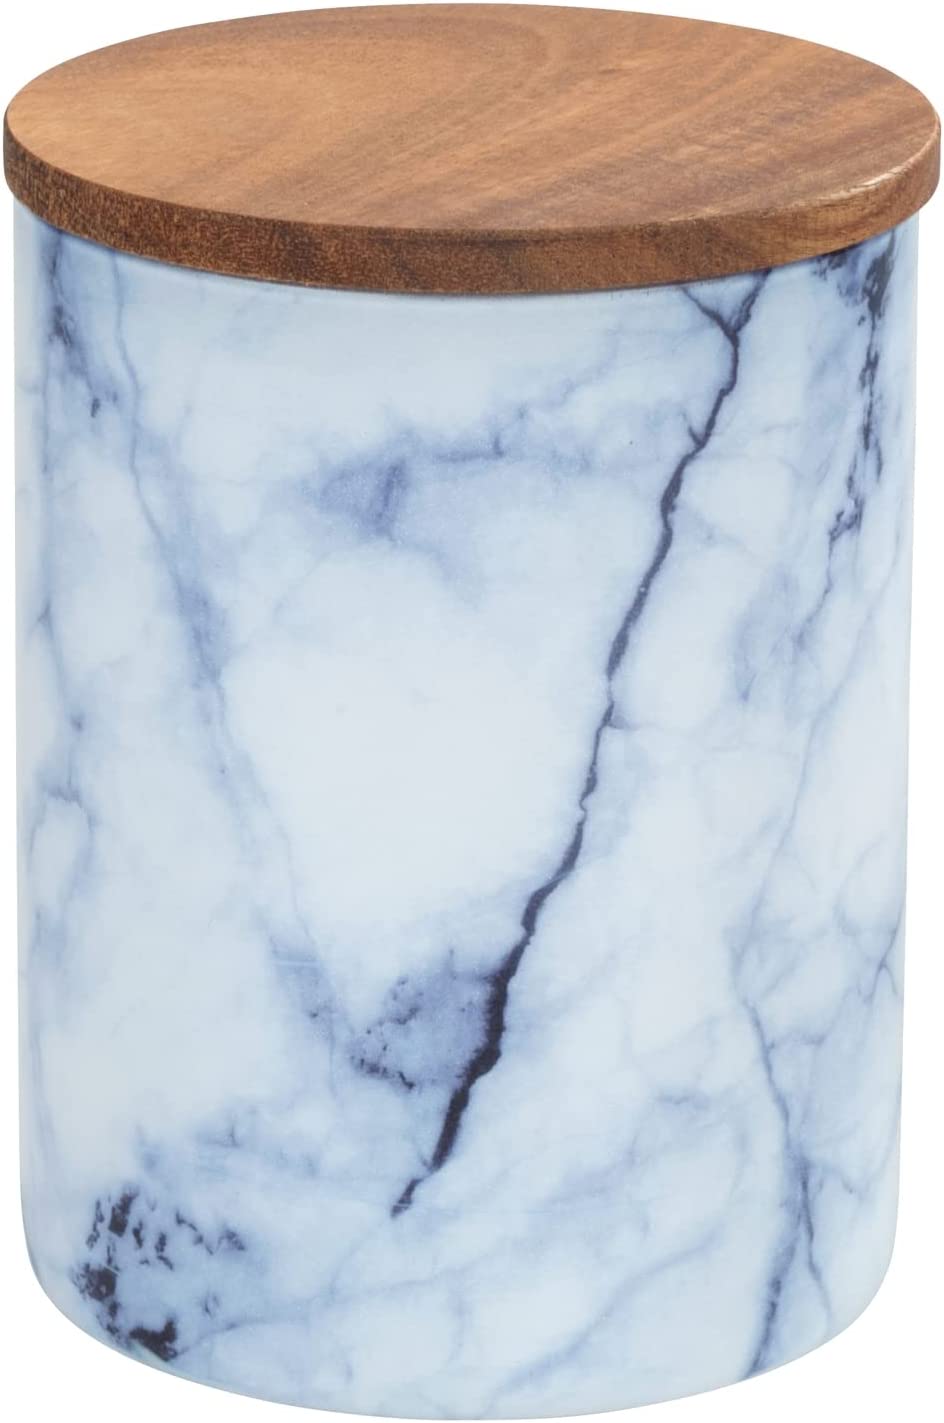 Aufbewahrungsdose Mio, Vorratsdose aus Borosilikatglas in Marmor-Optik in Blau/Weiß mit luftdicht verschließbarem Deckel aus FSC® zertifiziertem braunen Akazienholz, 1 L, Ø 11 x 14,5 cm